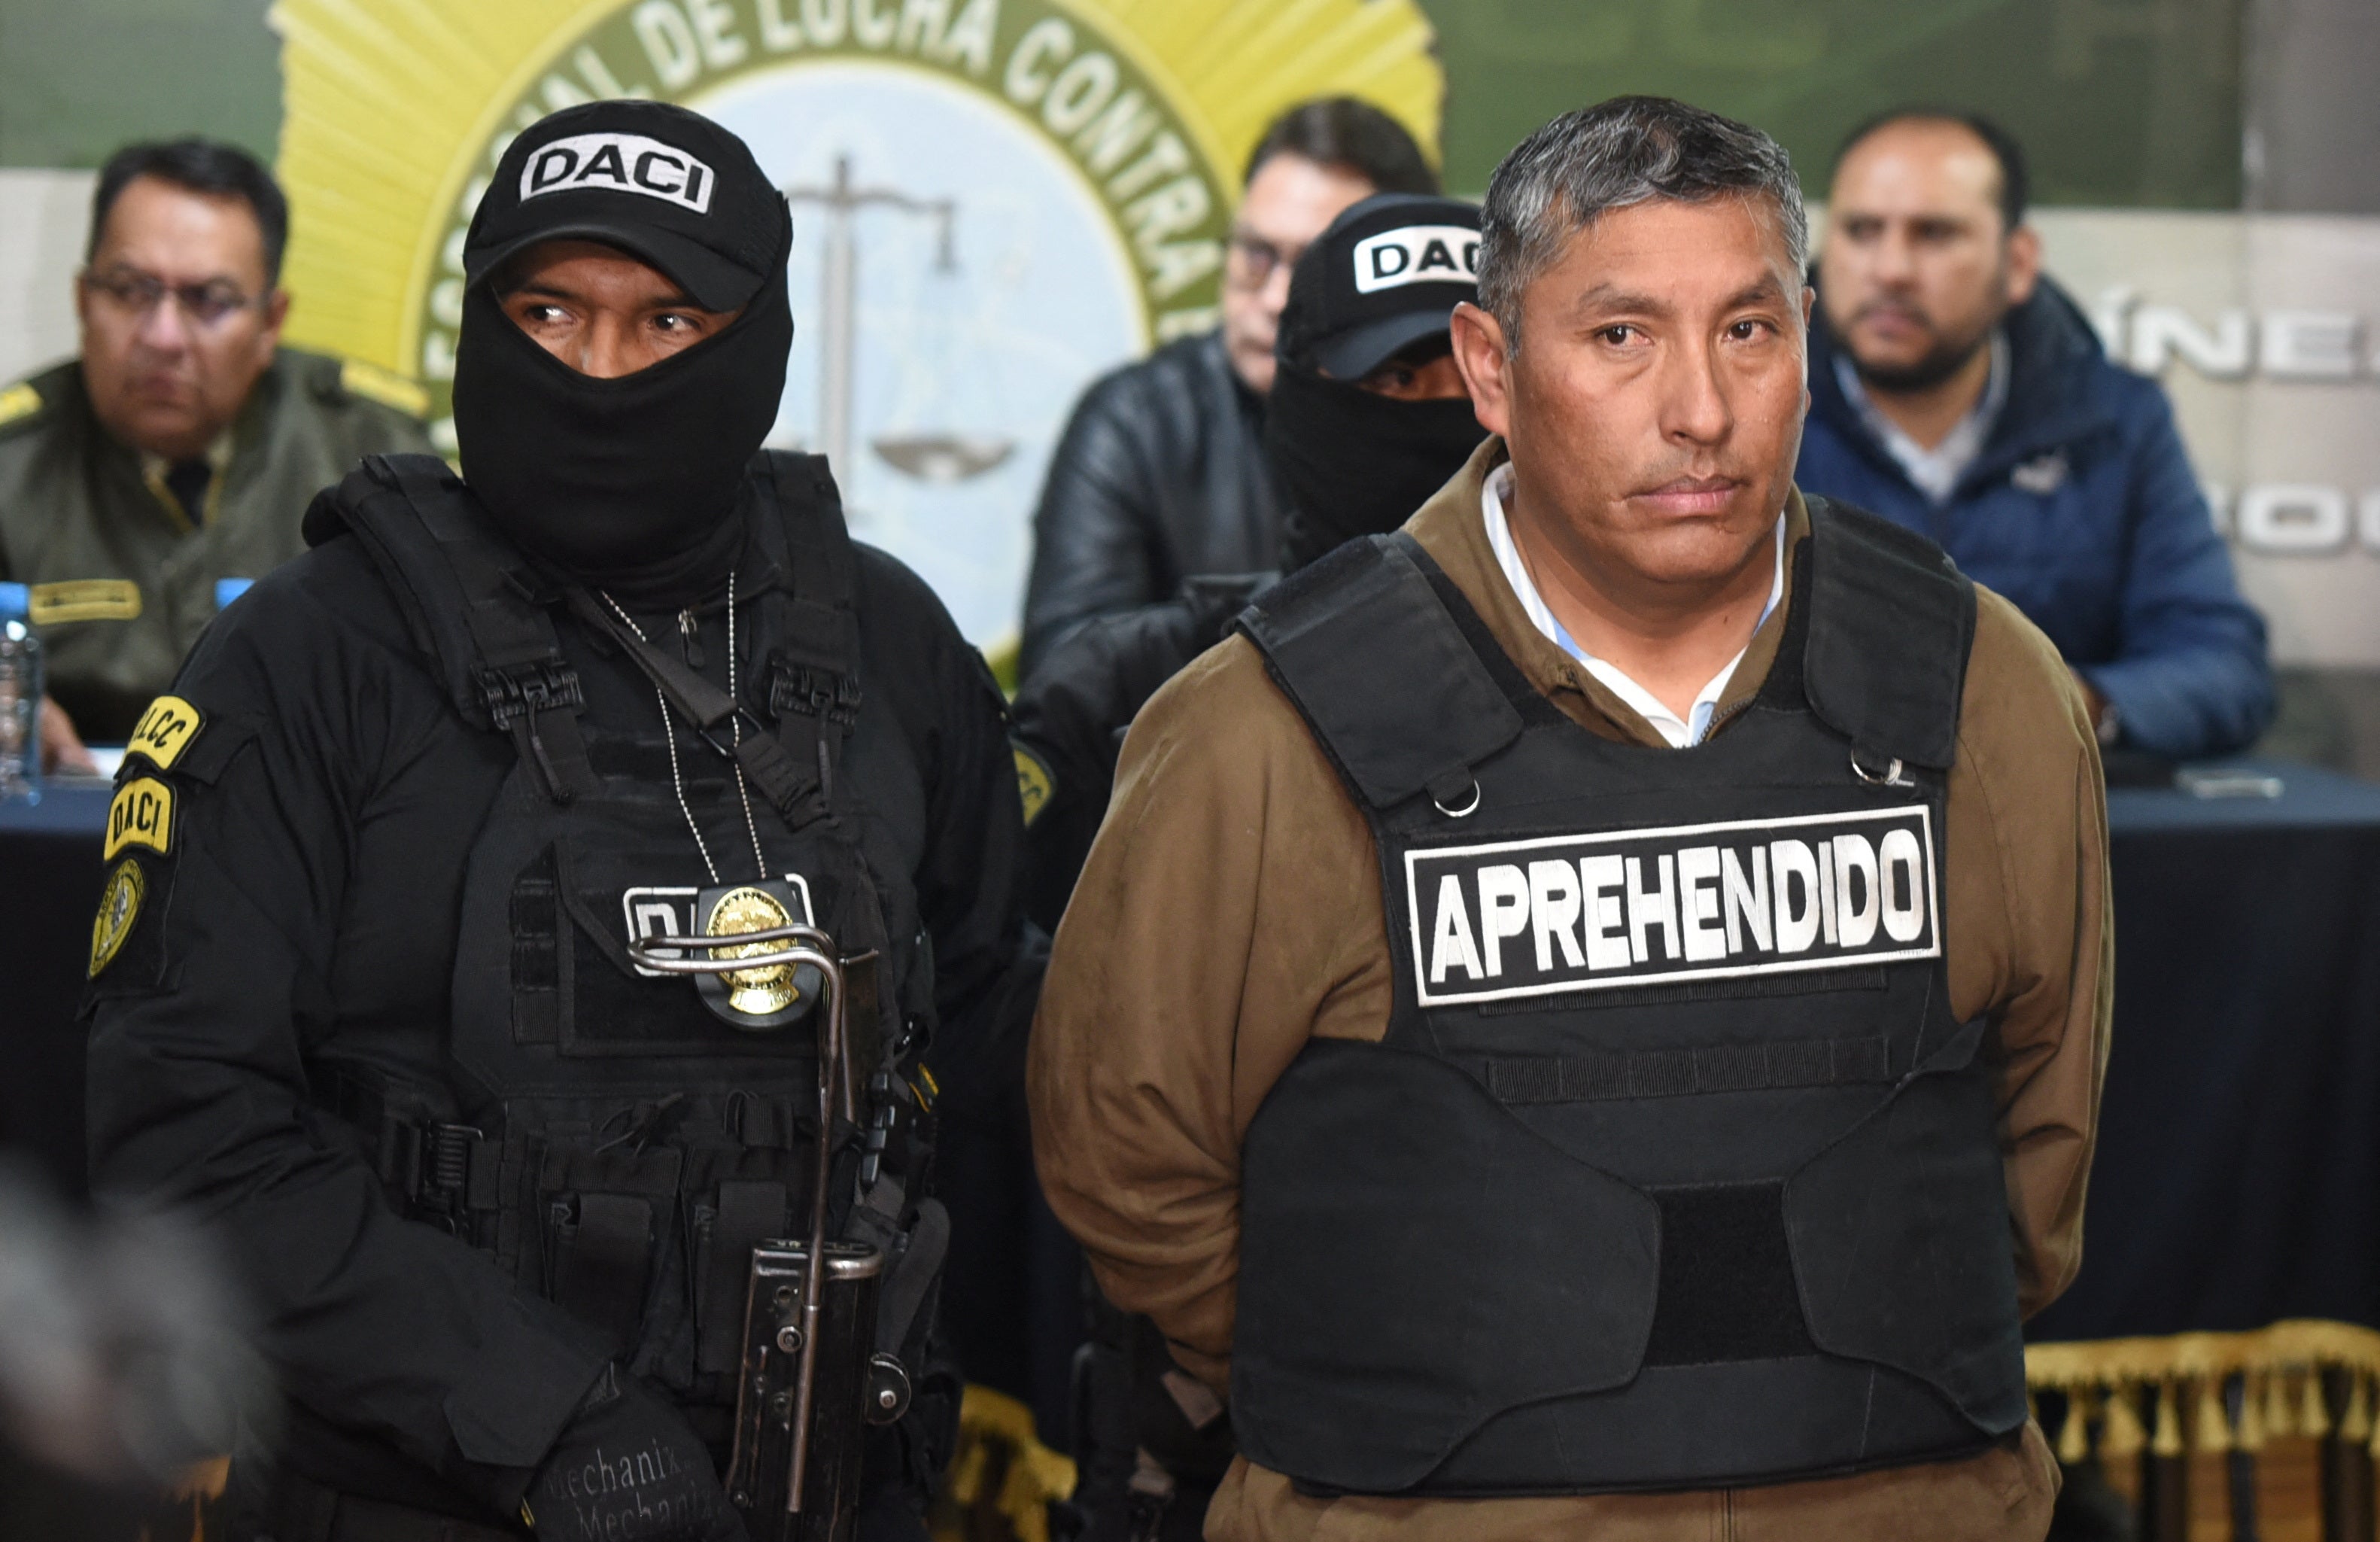 Bolivijský viceadmirál Juan Arnes Salvador předváděl po jeho zatčení úřady na základě obvinění z pokusu o převrat v La Paz